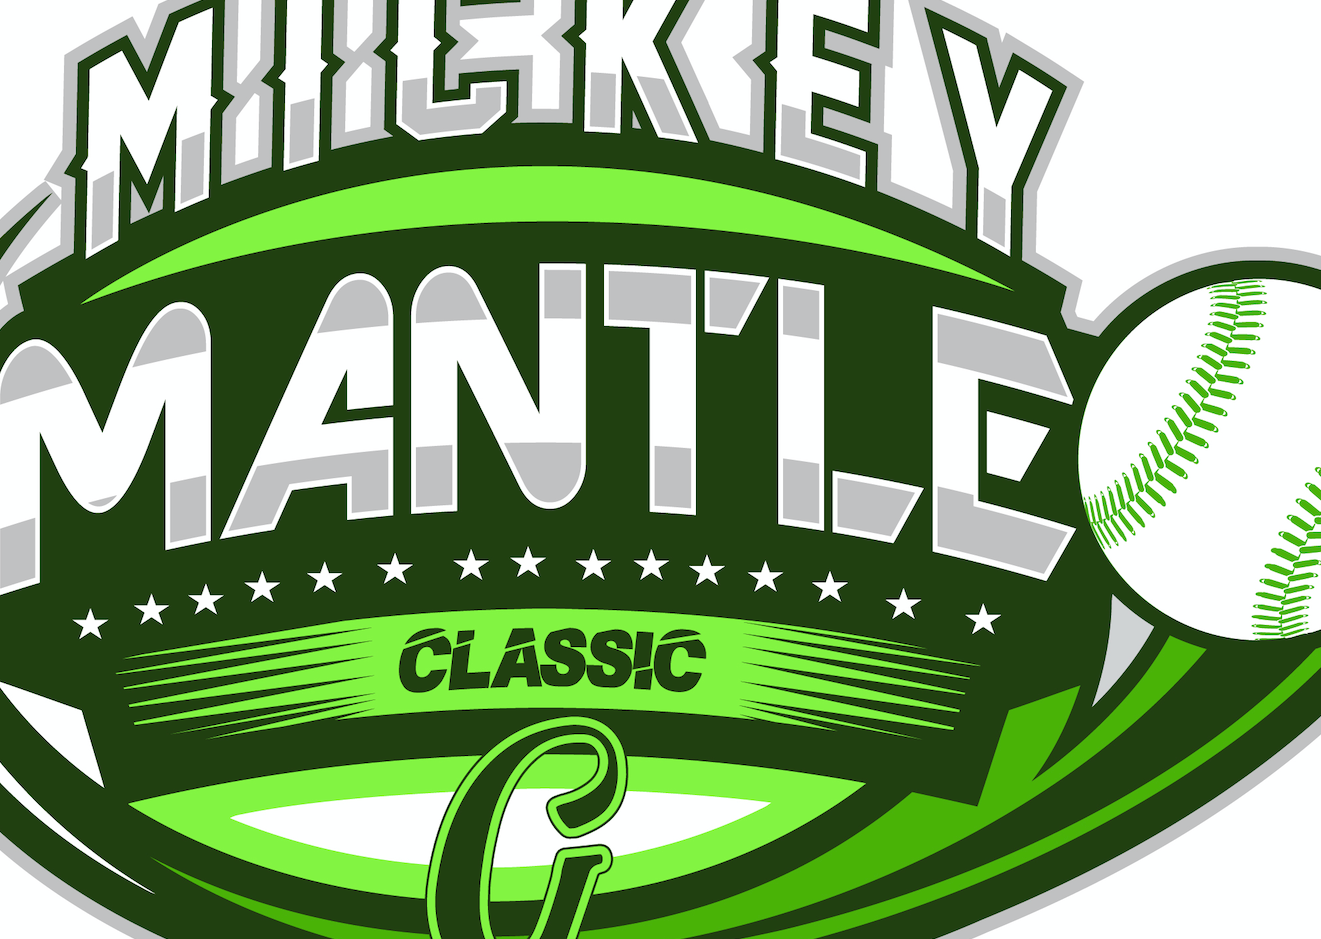 (13u) Mickey Mantle Classic AAA/Majors